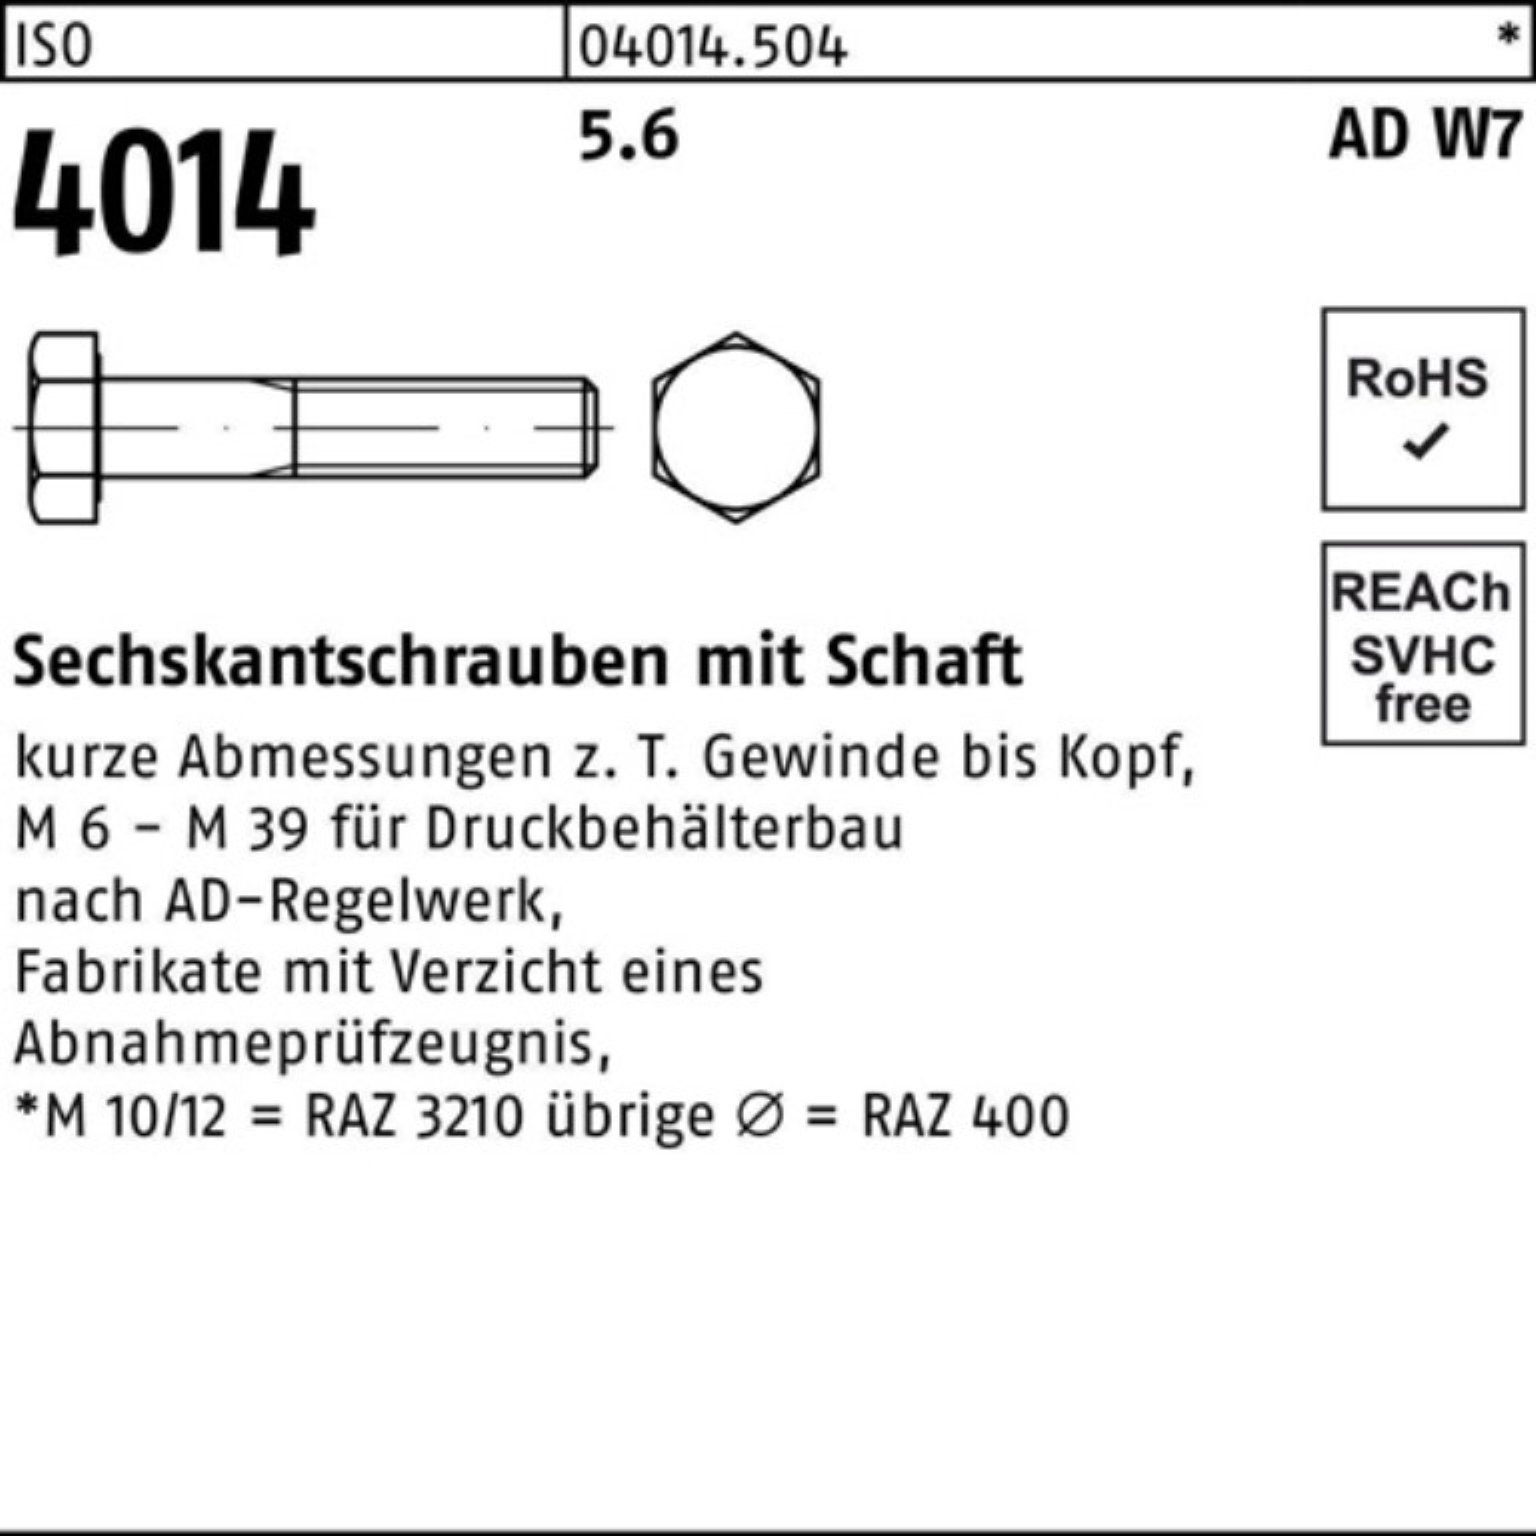 Bufab Sechskantschraube 100er 1 Sechskantschraube Schaft M30x W7 ISO Pack 4014 280 Stück 5.6